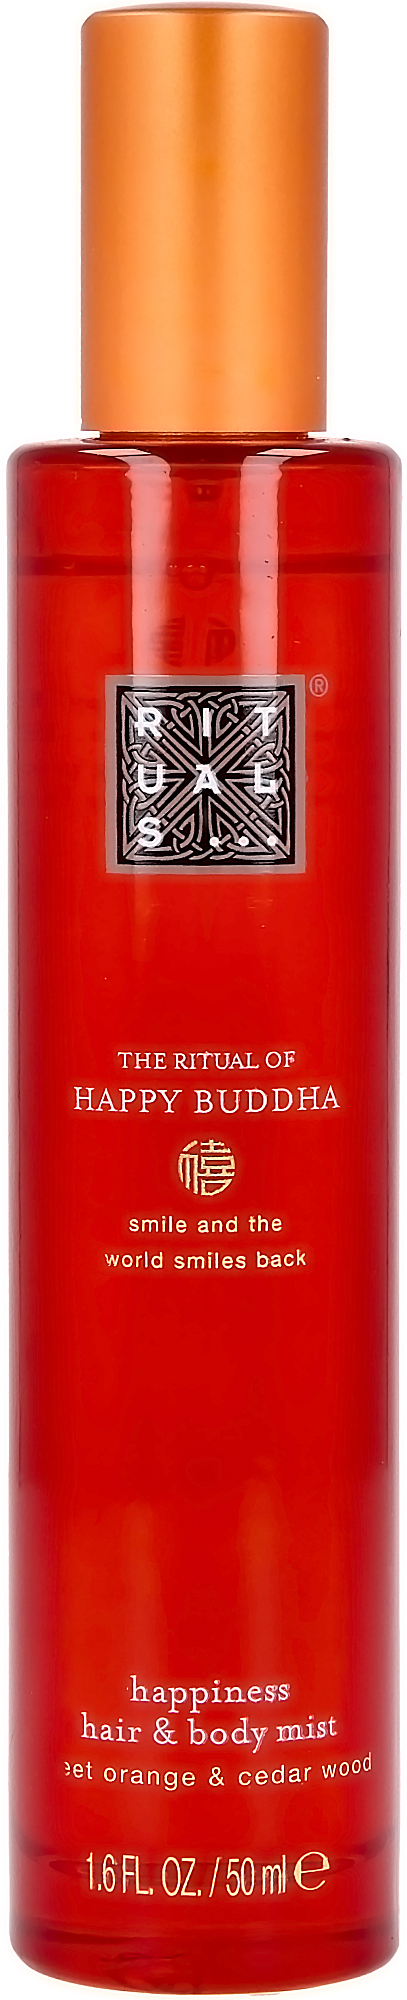 Rituals Happy Buddha BodyMist Haar- und Körperspray Orange